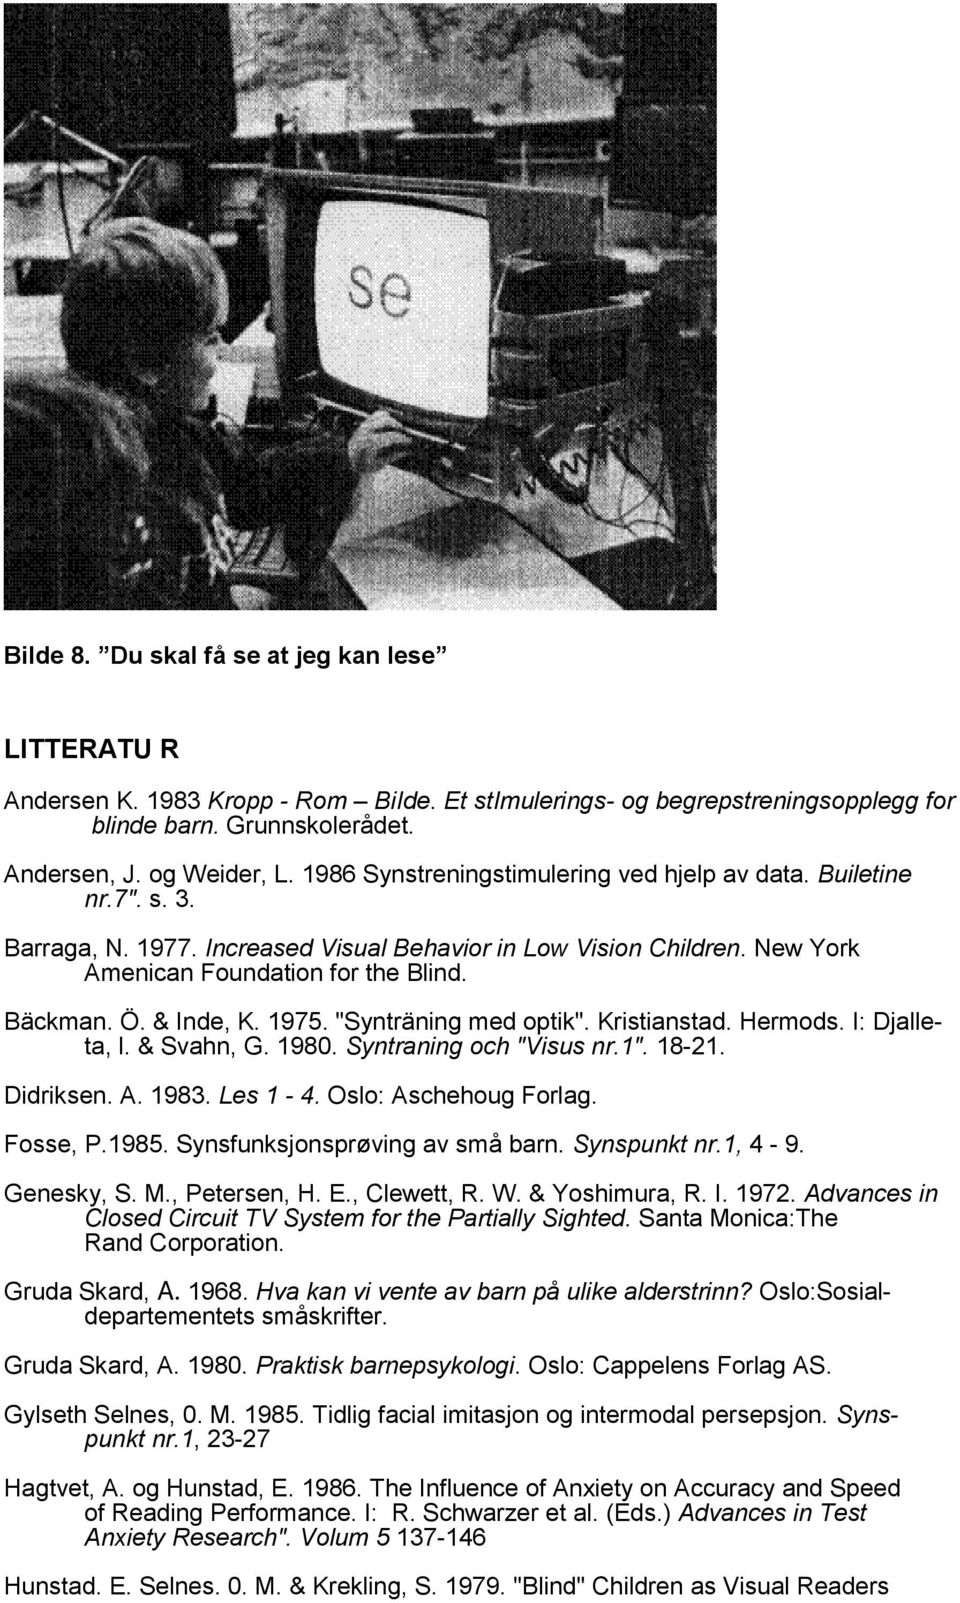 & Inde, K. 1975. "Synträning med optik". Kristianstad. Hermods. I: Djalleta, l. & Svahn, G. 1980. Syntraning och "Visus nr.1". 18-21. Didriksen. A. 1983. Les 1-4. Oslo: Aschehoug Forlag. Fosse, P.